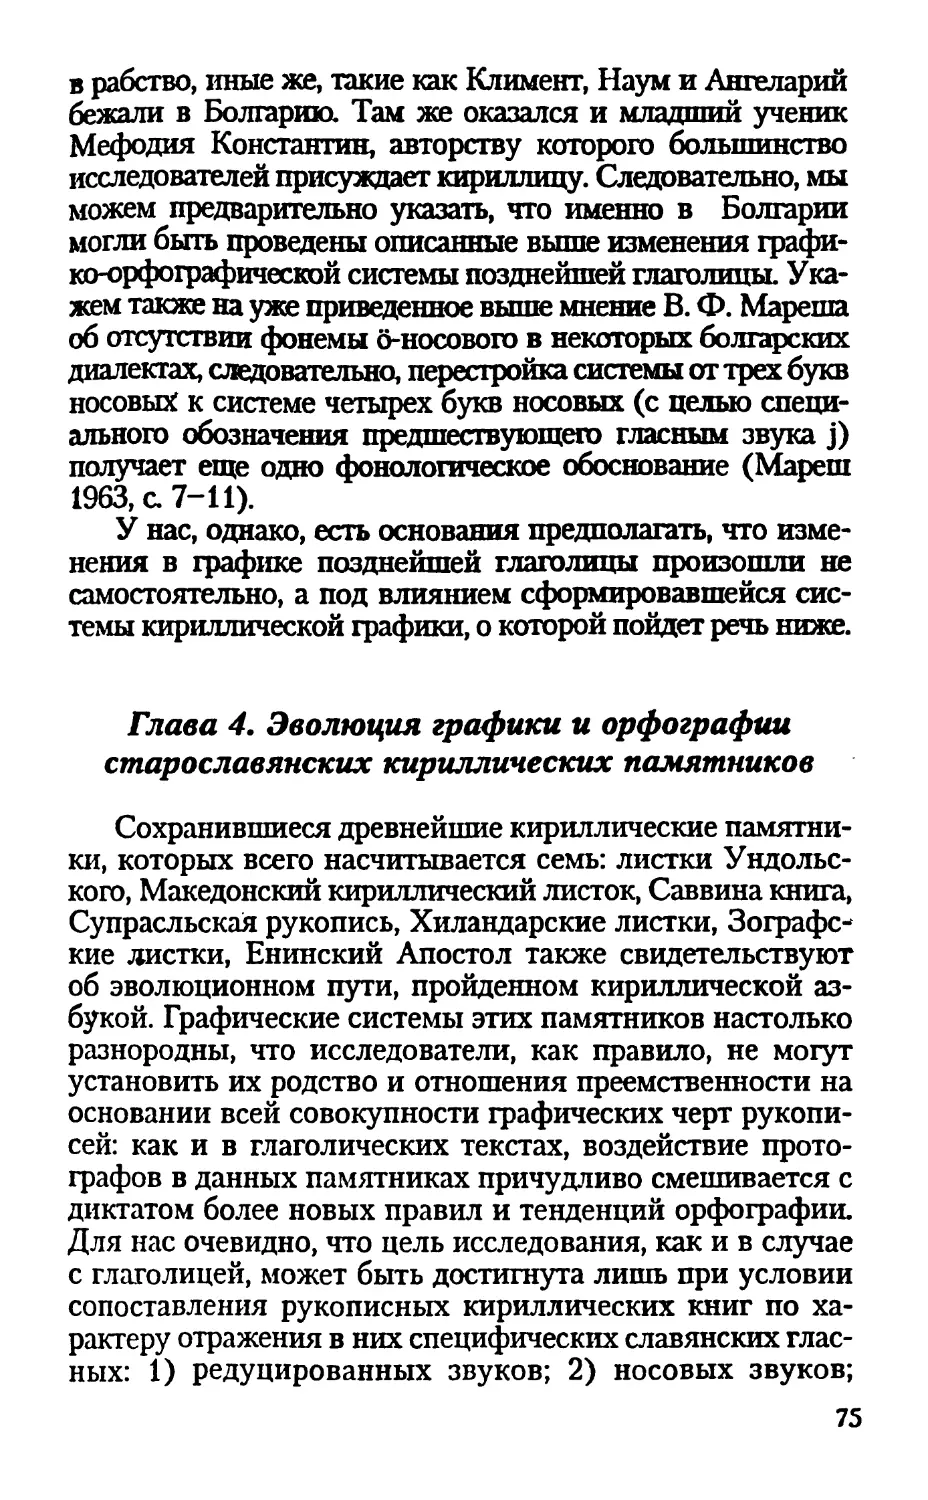 Глава 4. Эволюция графики и орфографии старославянских кириллических памятников